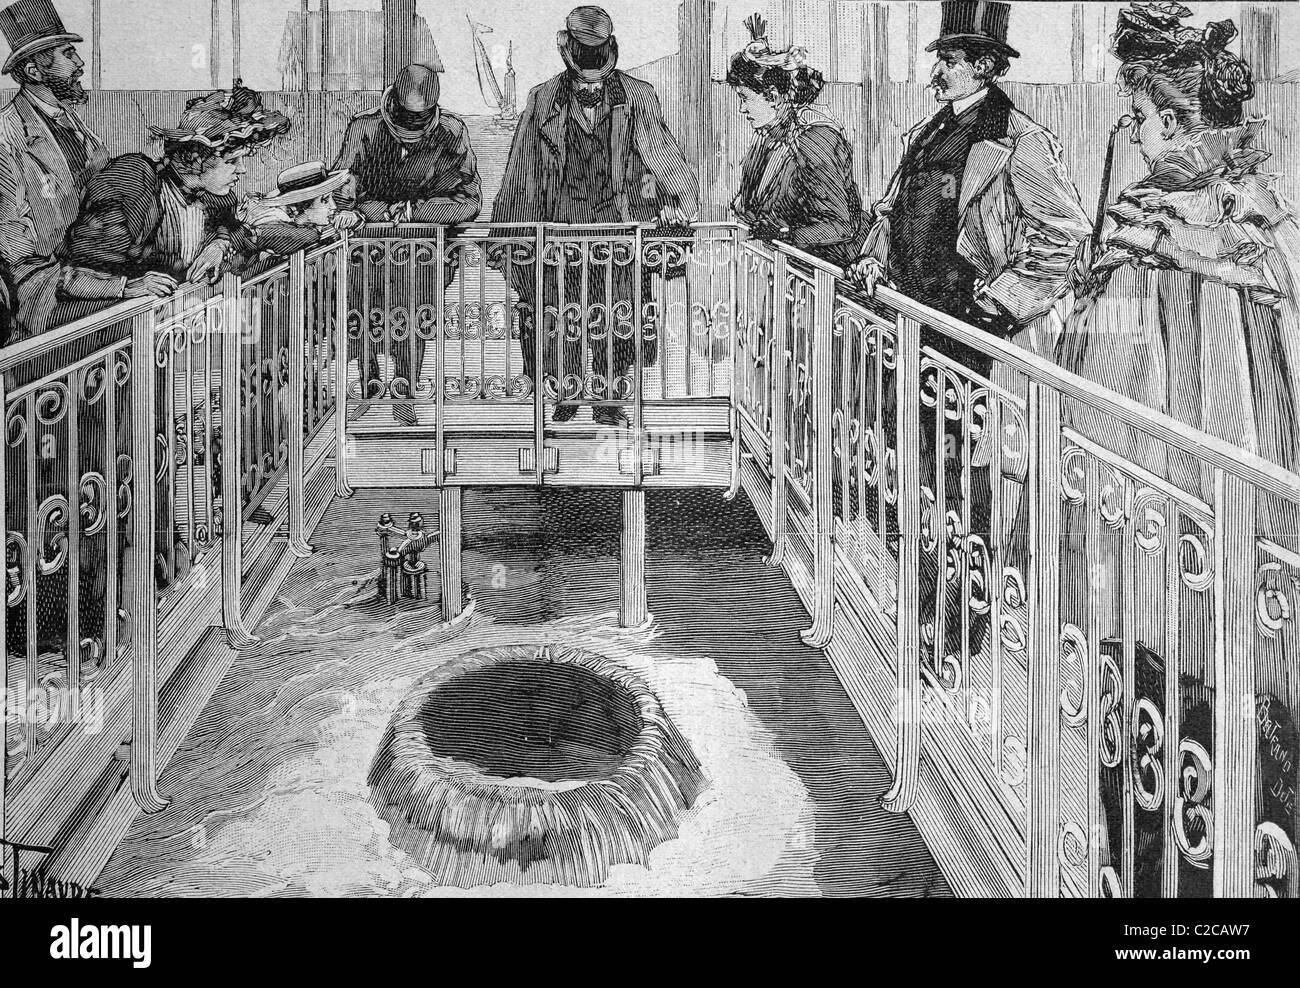 Inauguración de la nueva línea de suministro de agua, París, Francia, el cuadro histórico, 1893 Foto de stock